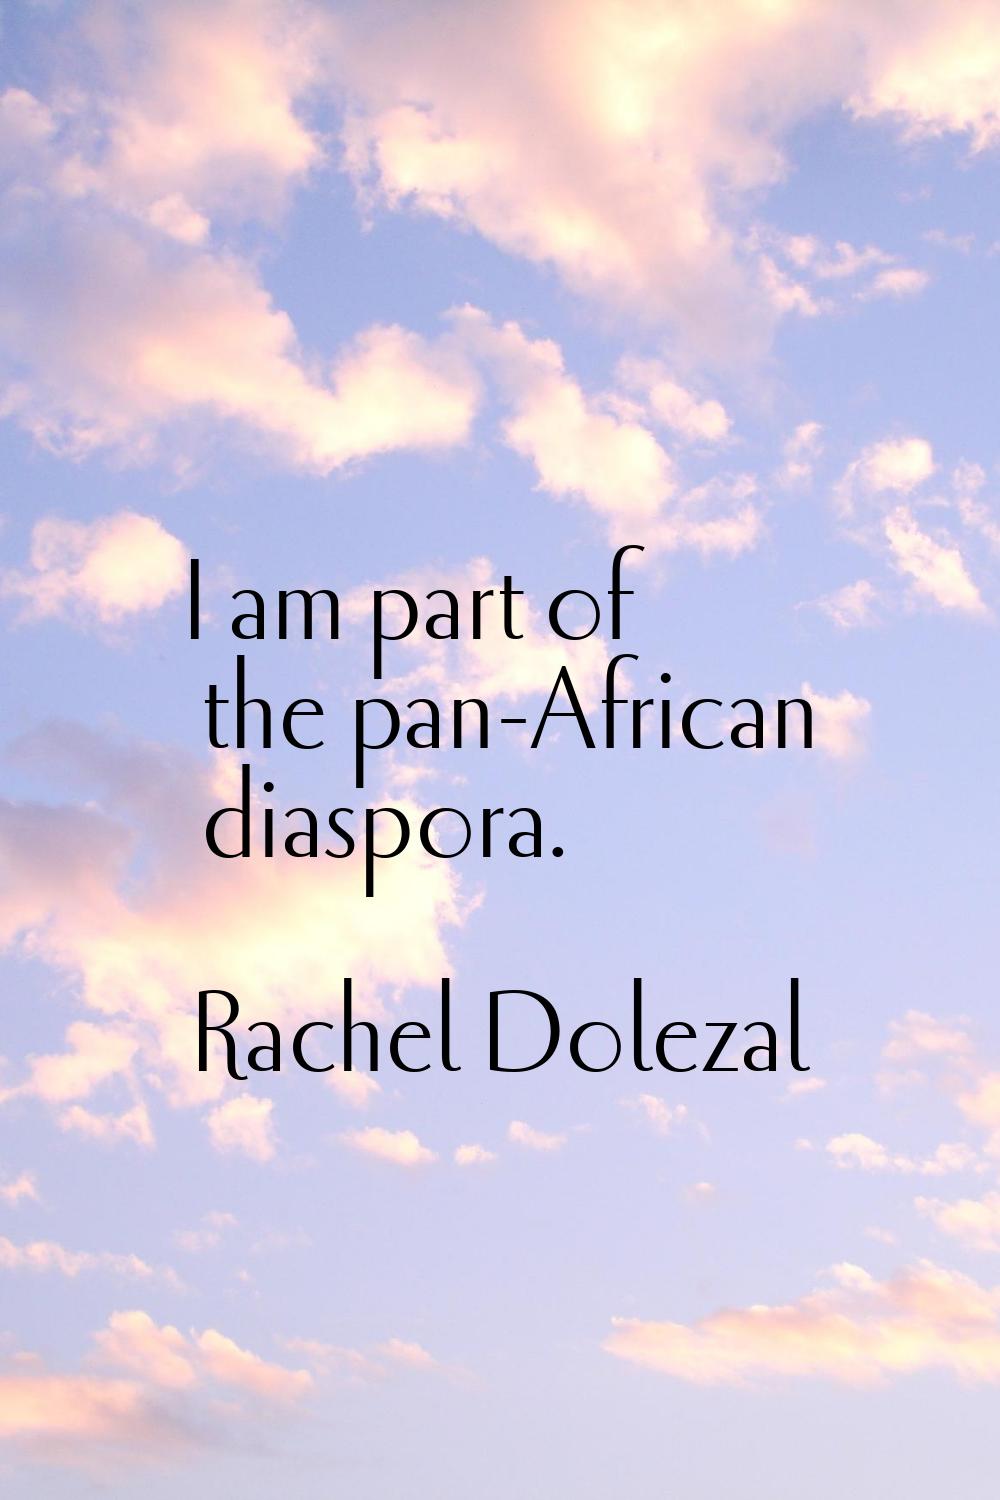 I am part of the pan-African diaspora.